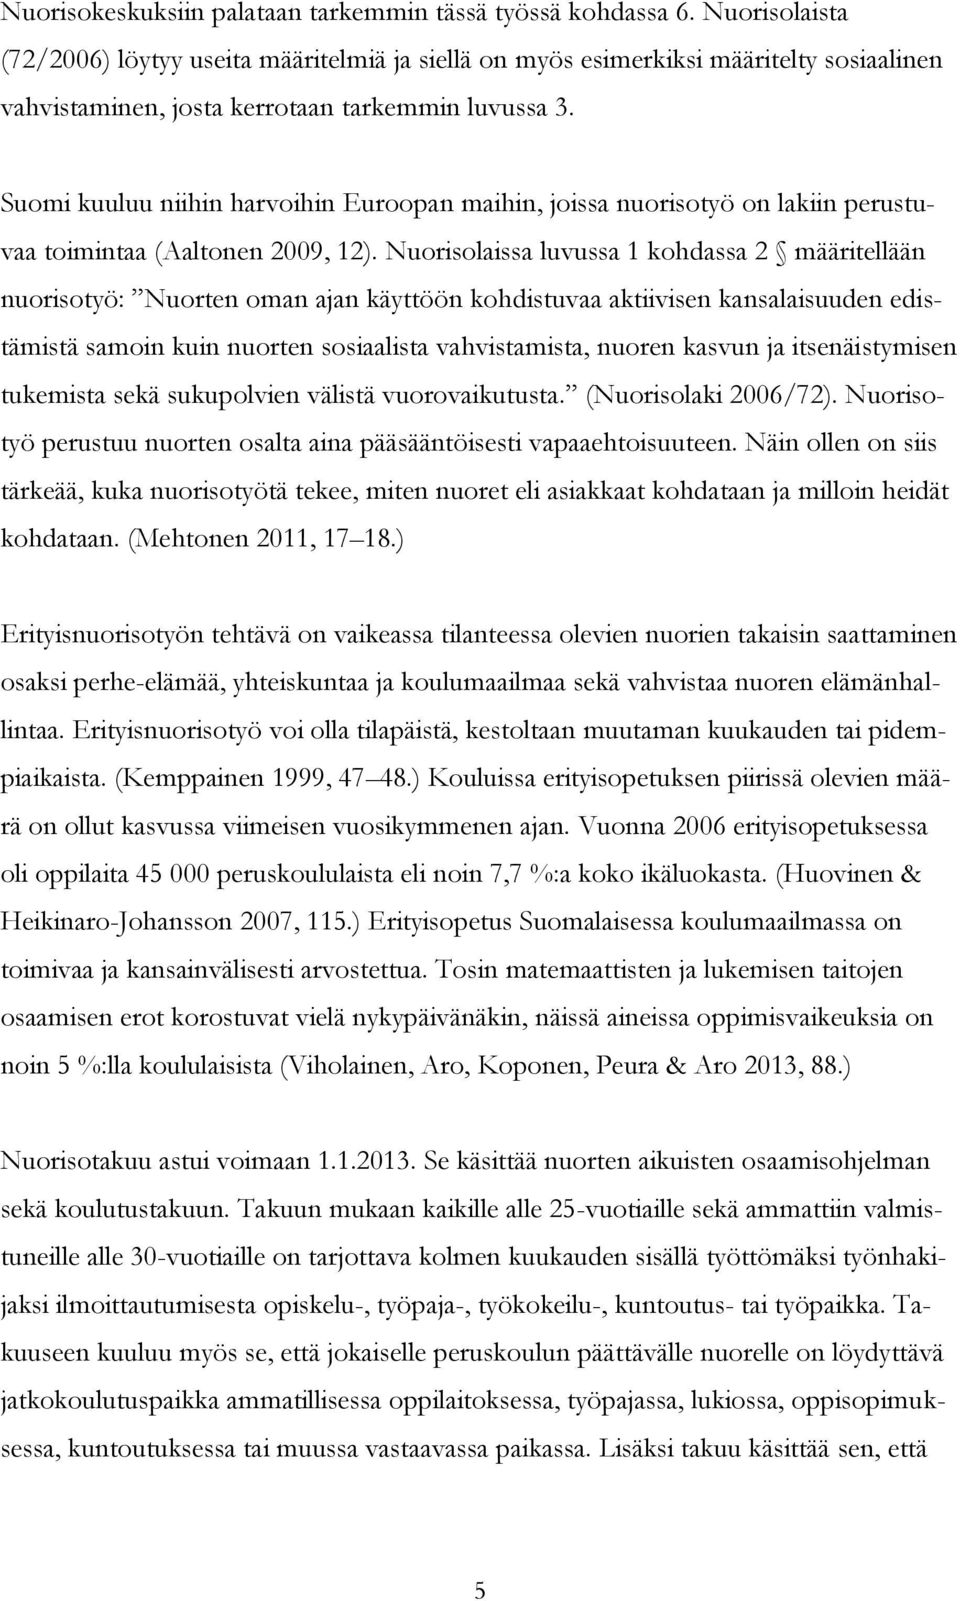 Suomi kuuluu niihin harvoihin Euroopan maihin, joissa nuorisotyö on lakiin perustuvaa toimintaa (Aaltonen 2009, 12).